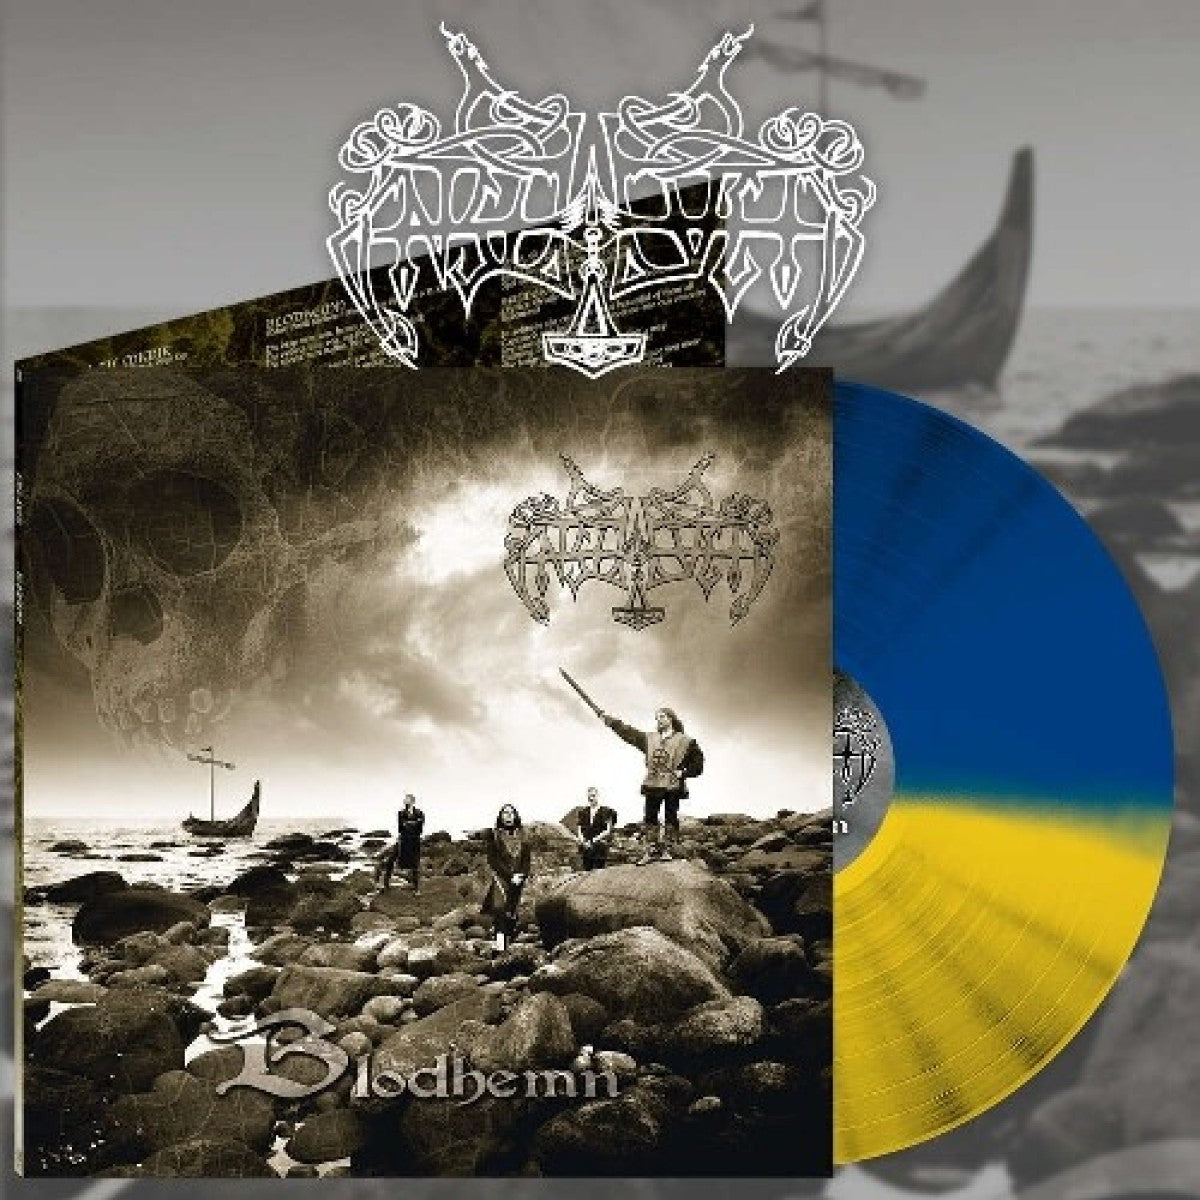 Enslaved "Blodhemn" Blue / Yellow Vinyl